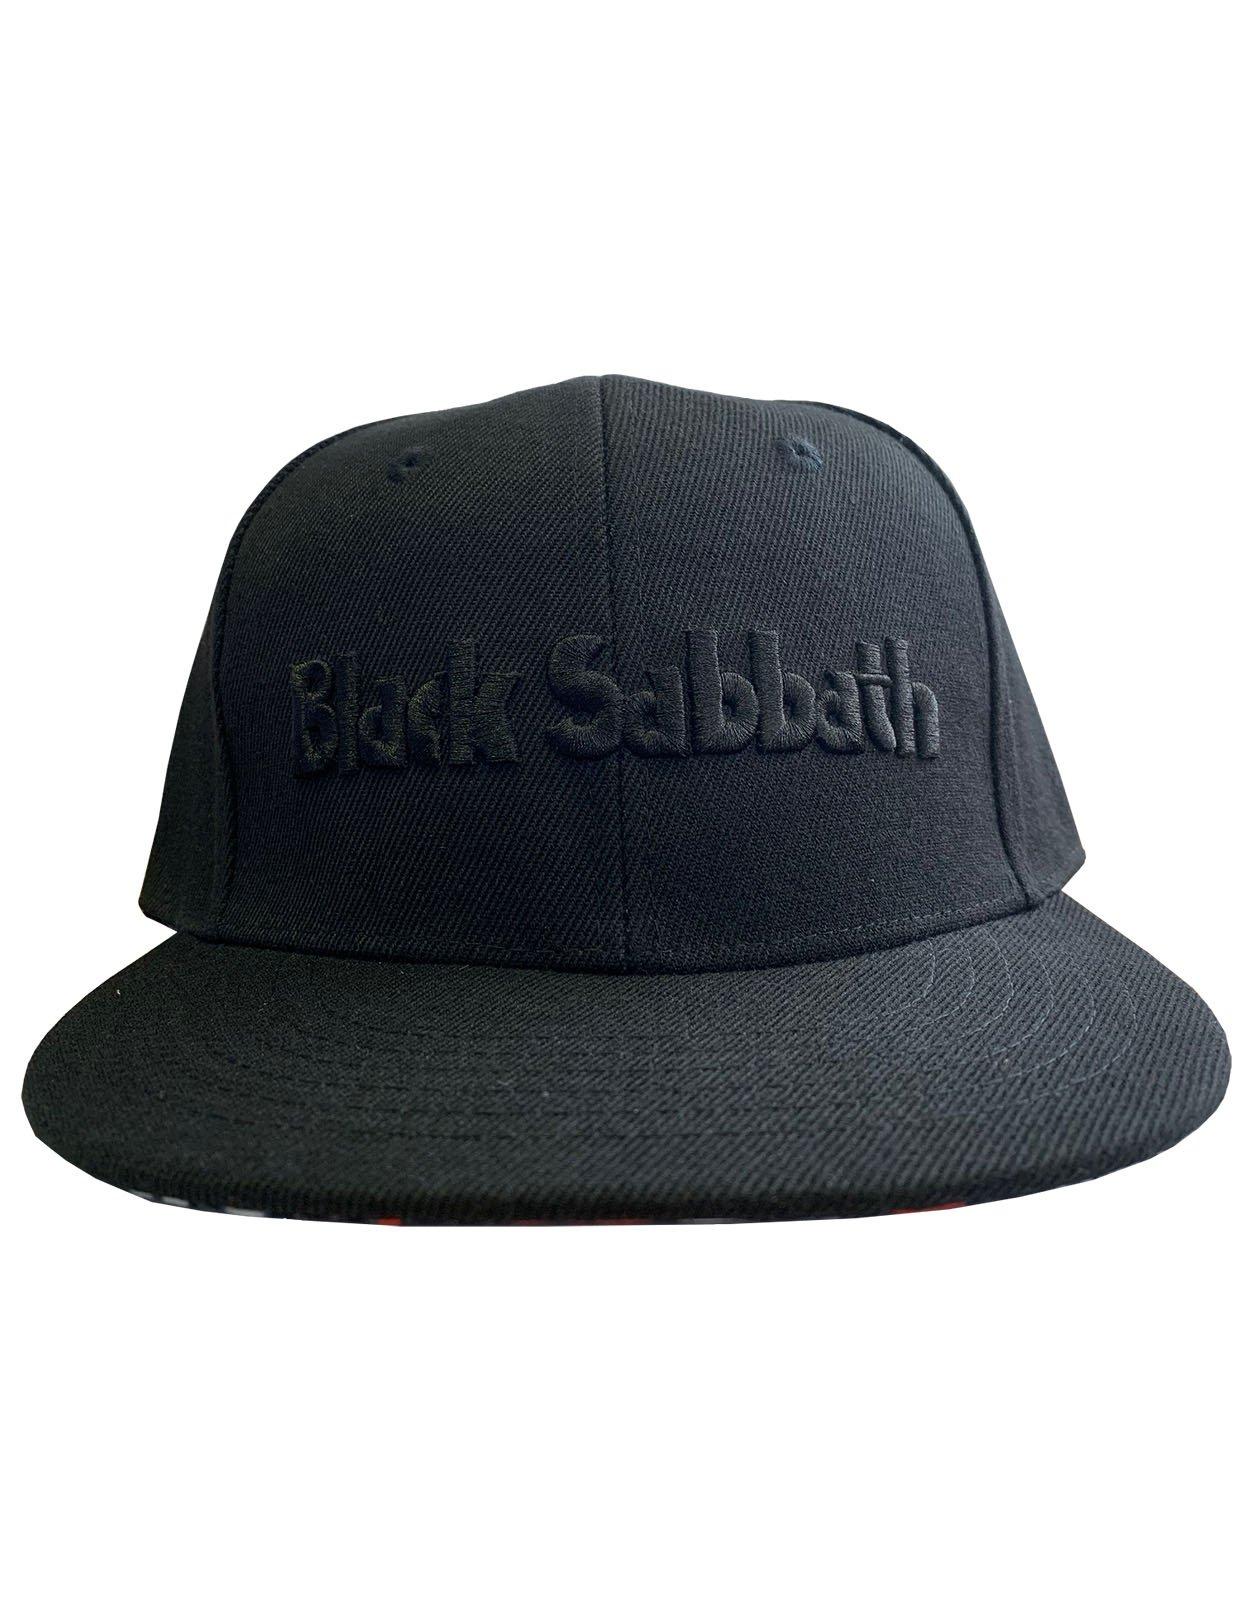 Логотип группы и бейсболка Demon Snapback Black Sabbath, черный шапка roblox черная бейсболка с порошком женская бейсболка студенческая корейская версия солнцезащитной шляпы мужская и женская бейсболка